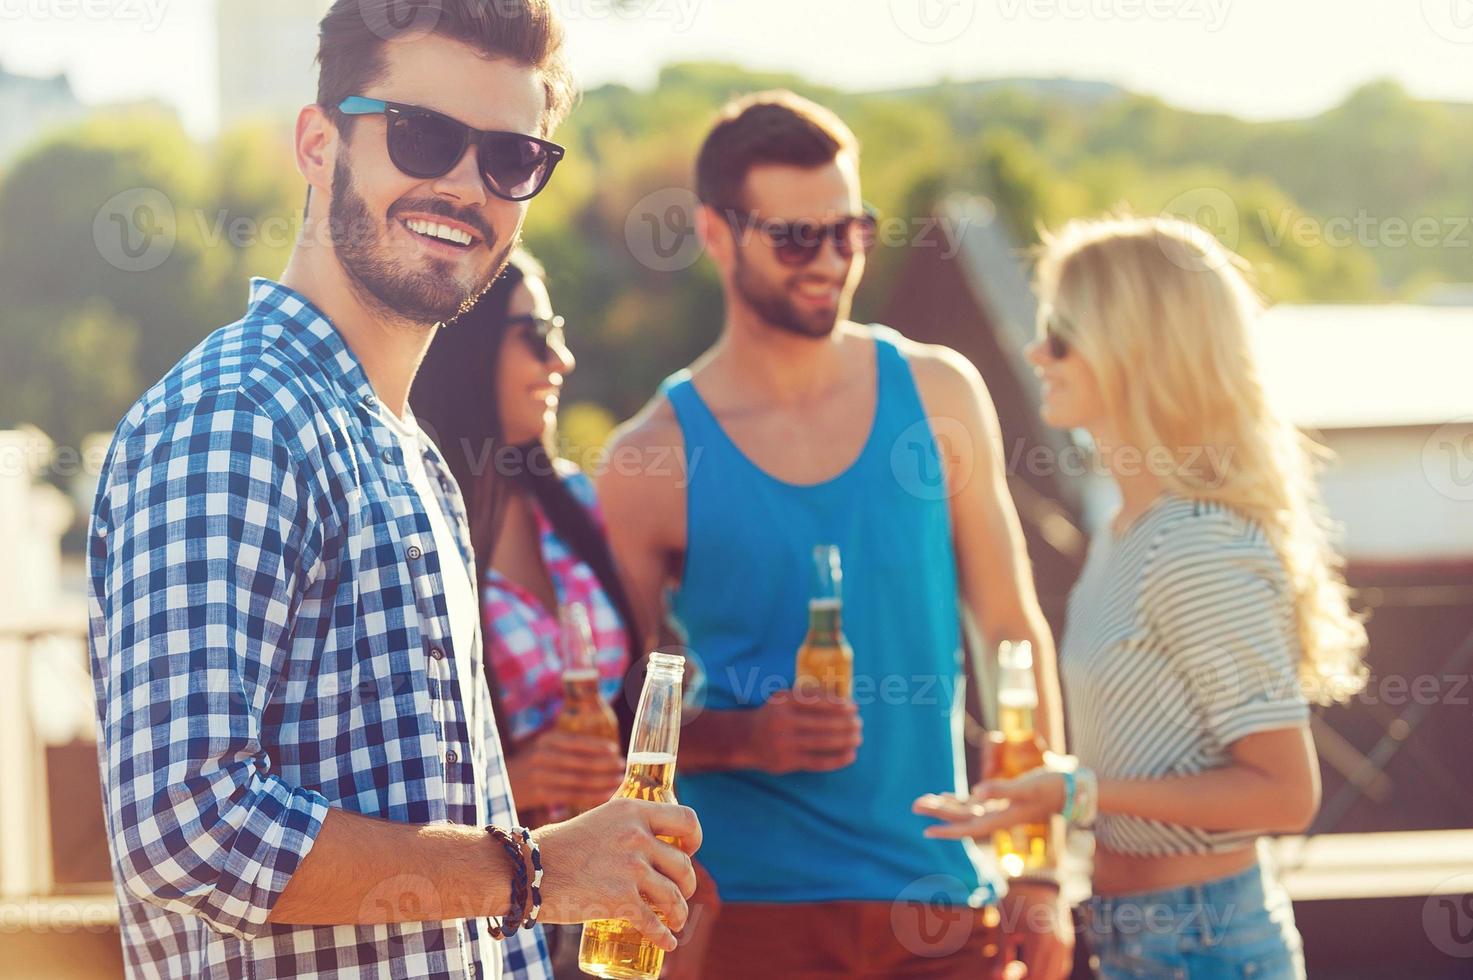 Bier mit Freunden genießen. glücklicher junger Mann, der eine Flasche Bier hält und in die Kamera blickt, während drei Personen im Hintergrund miteinander sprechen foto